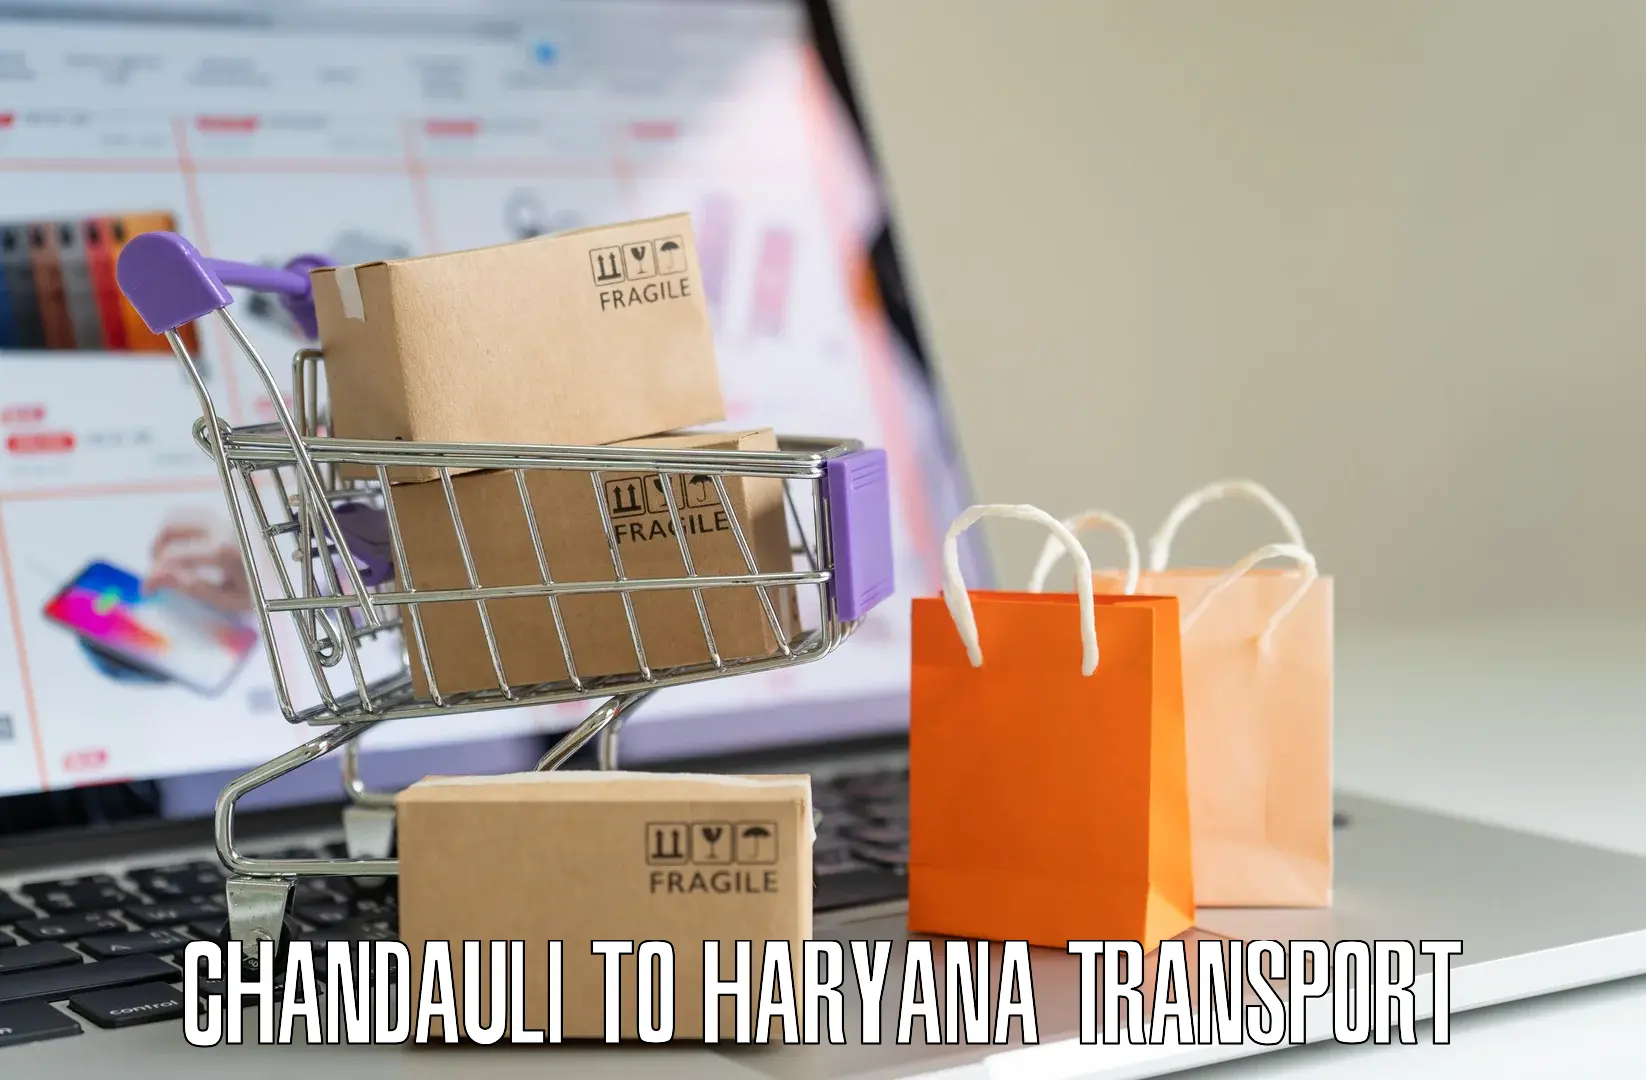 Nearest transport service Chandauli to Ambala